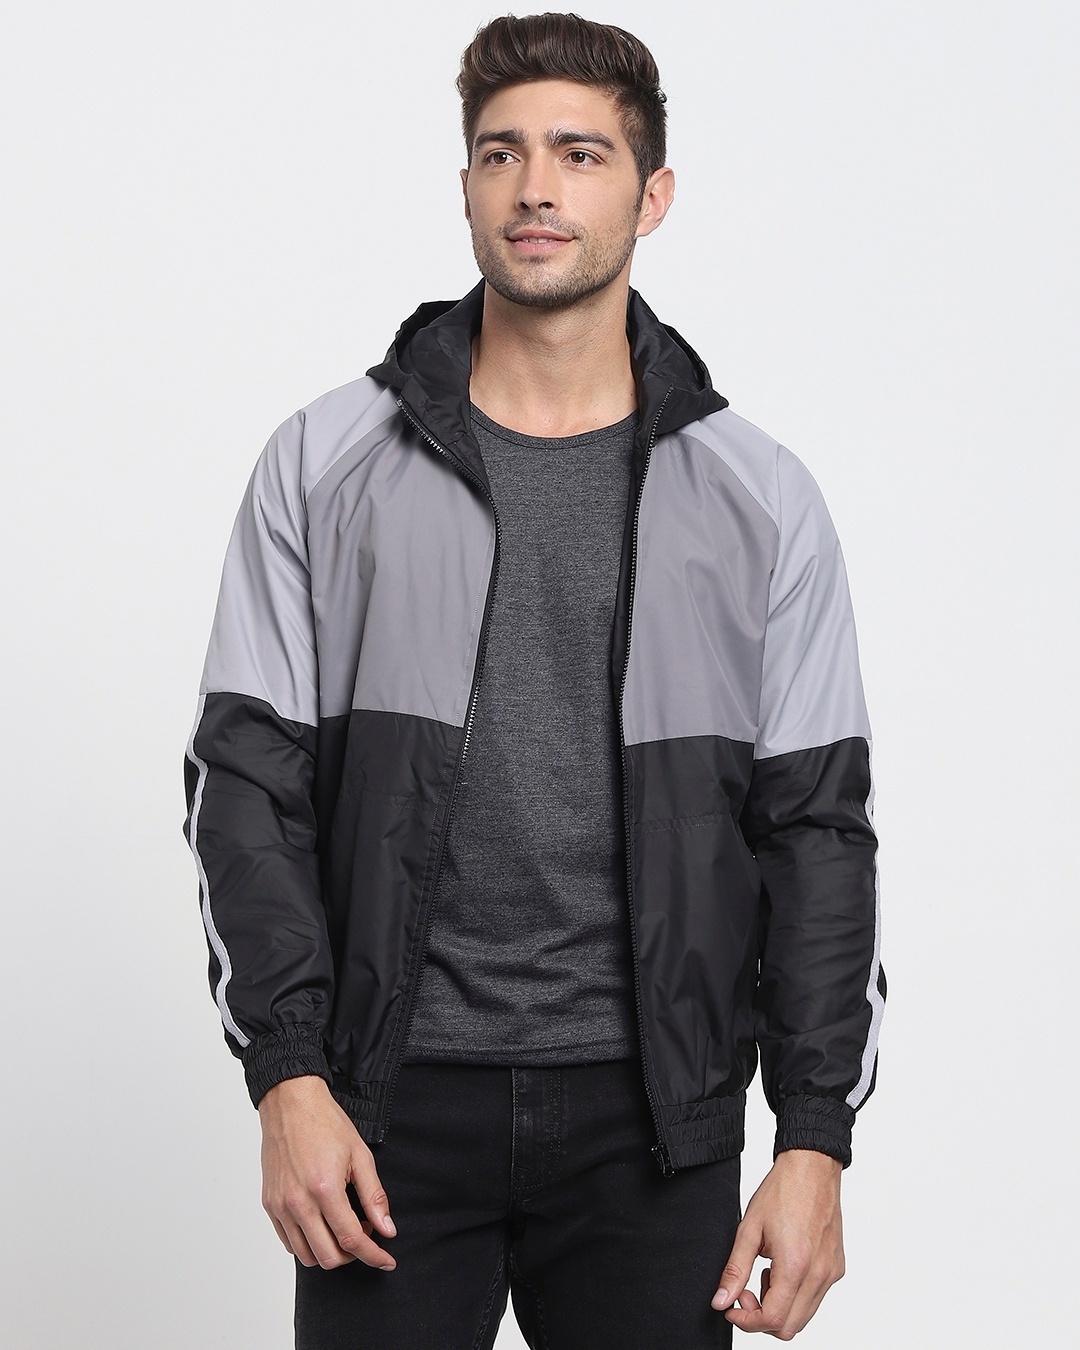 Buy Men's Grey & Black Color Block Windcheater Jacket Online at Bewakoof